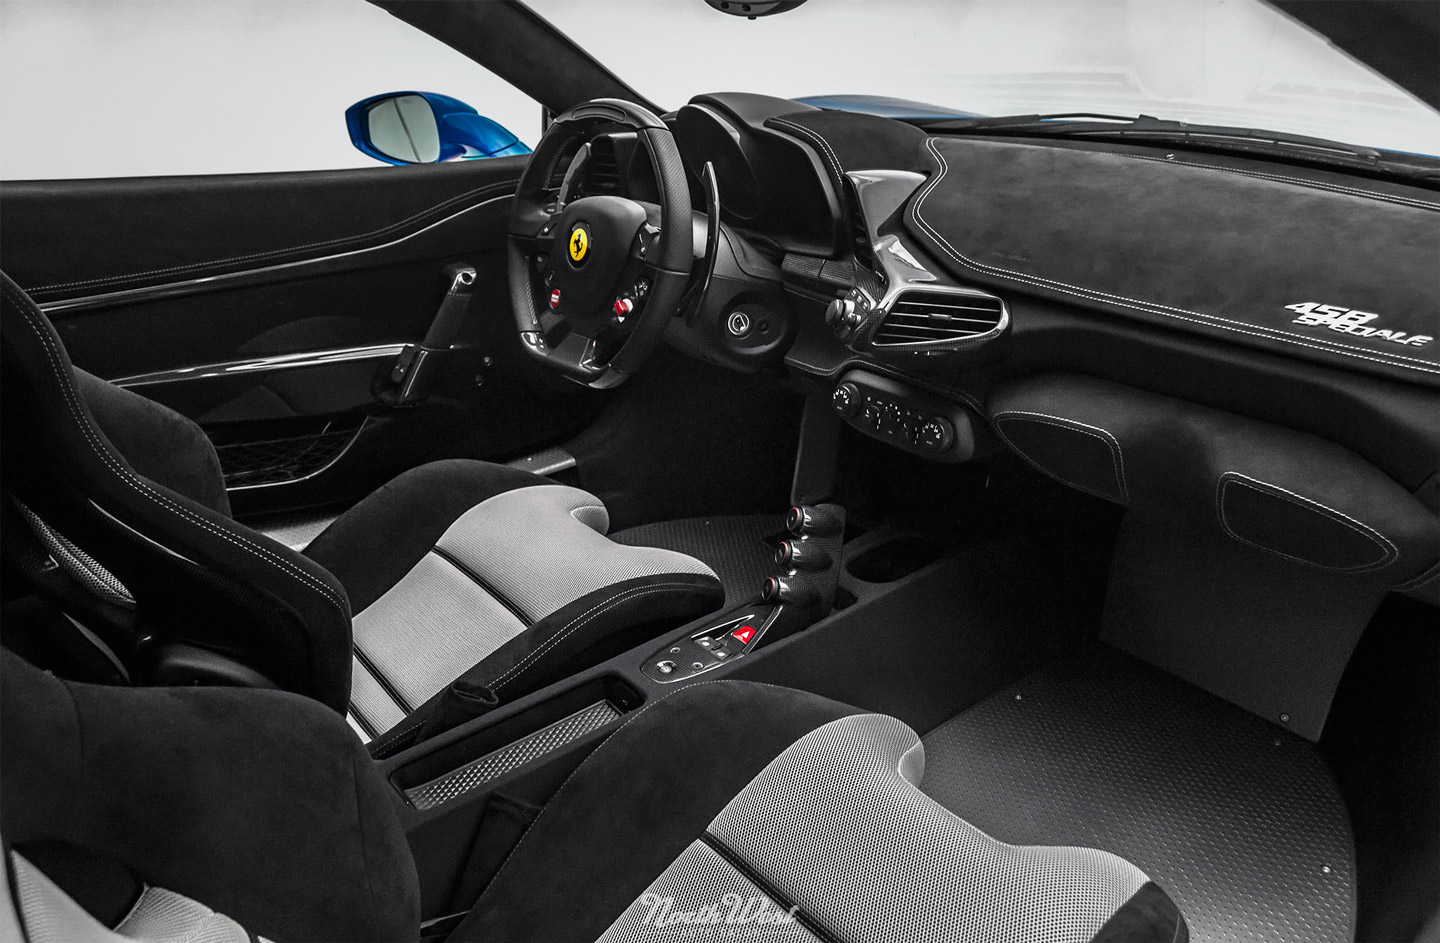 Azzurro-Dino-Ferrari-458-Speciale-XPEL-Ultimate-paint-protection-studio-interior-s-2